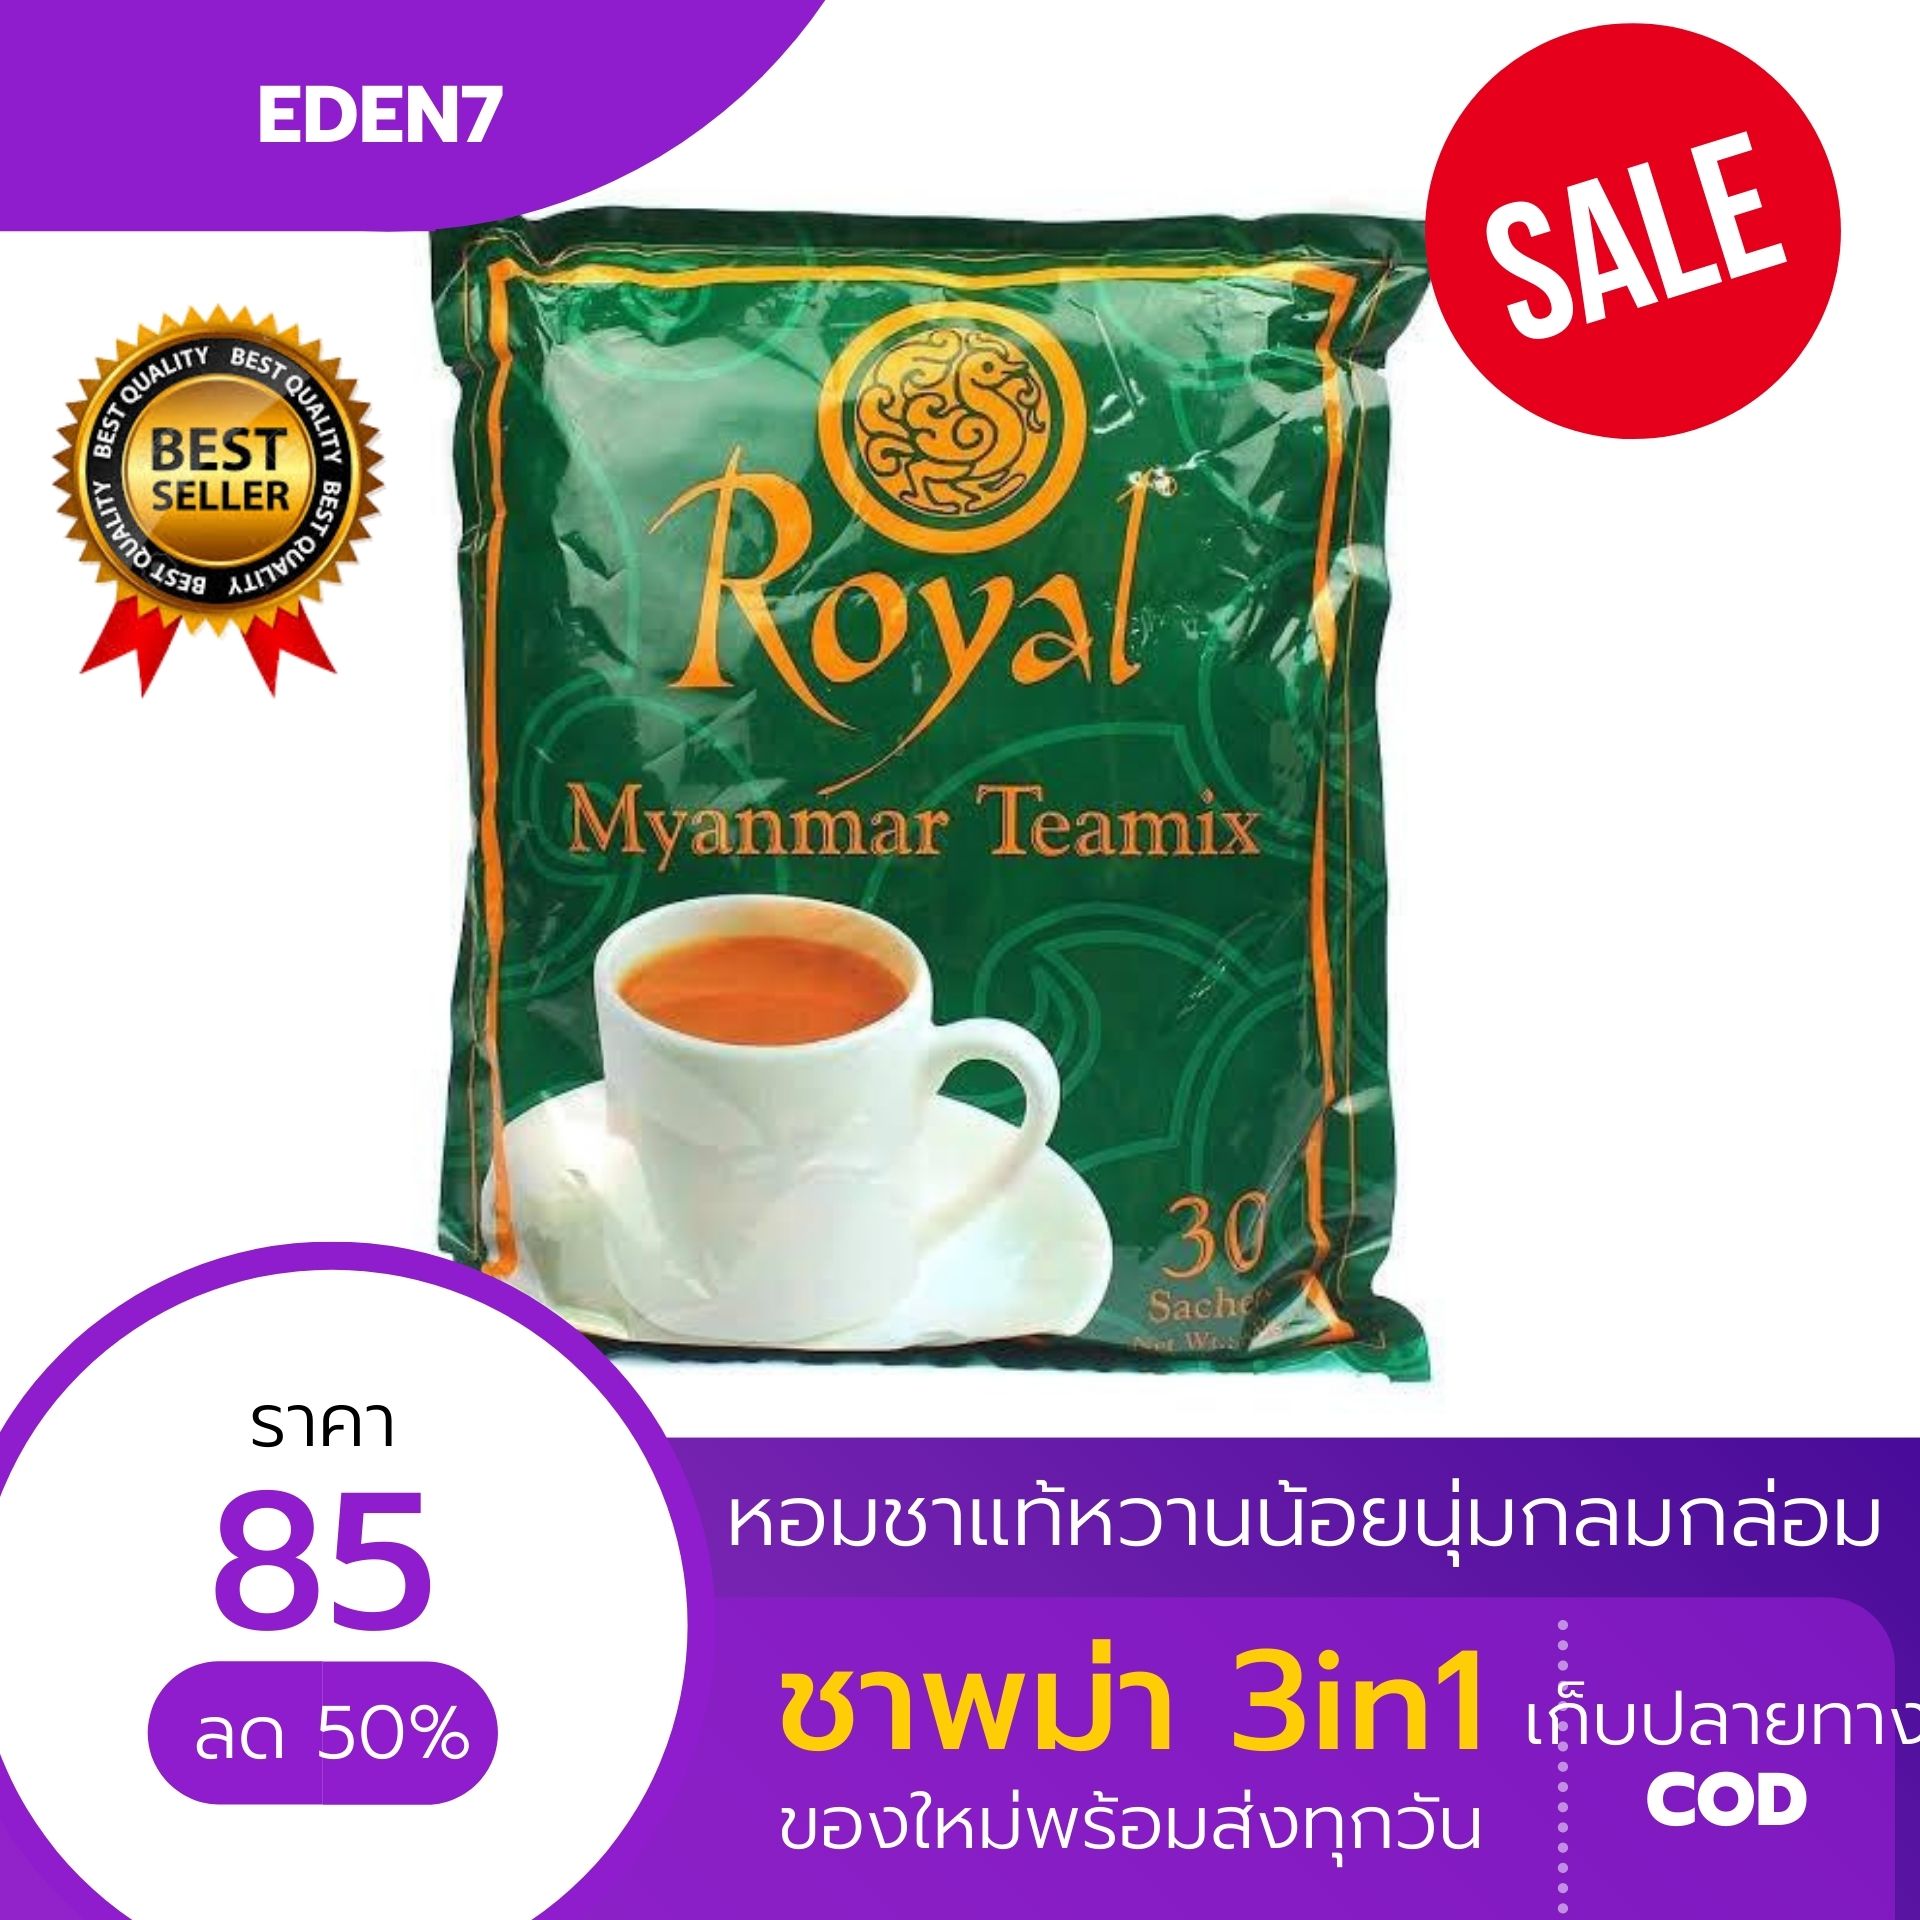 พร้อมส่ง! สต๊อกใหม่🍮ชาพม่า 3in1 Royal TeaMix หวานน้อยหอมละมุน รสเข็มข้น รับรองจะติดใจ Pack 30 1ห่อมี30 ซองမြန်မာလက်ဖက်ရည် 